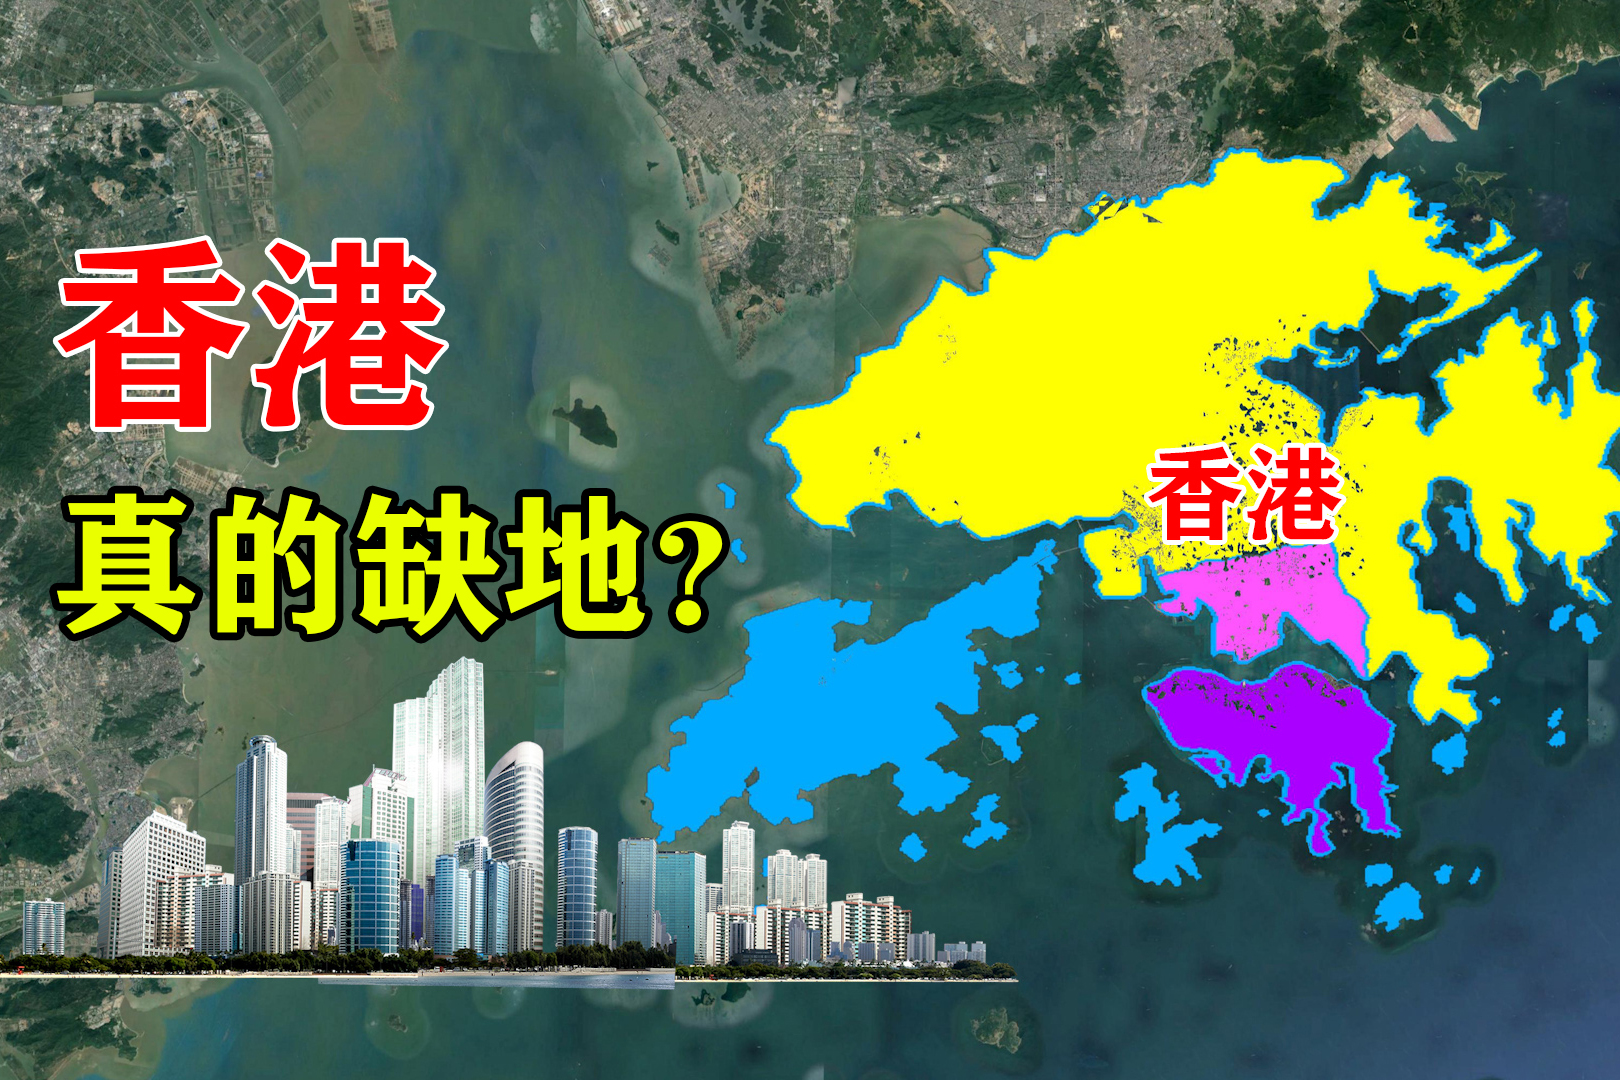 香港填海造陆地图图片